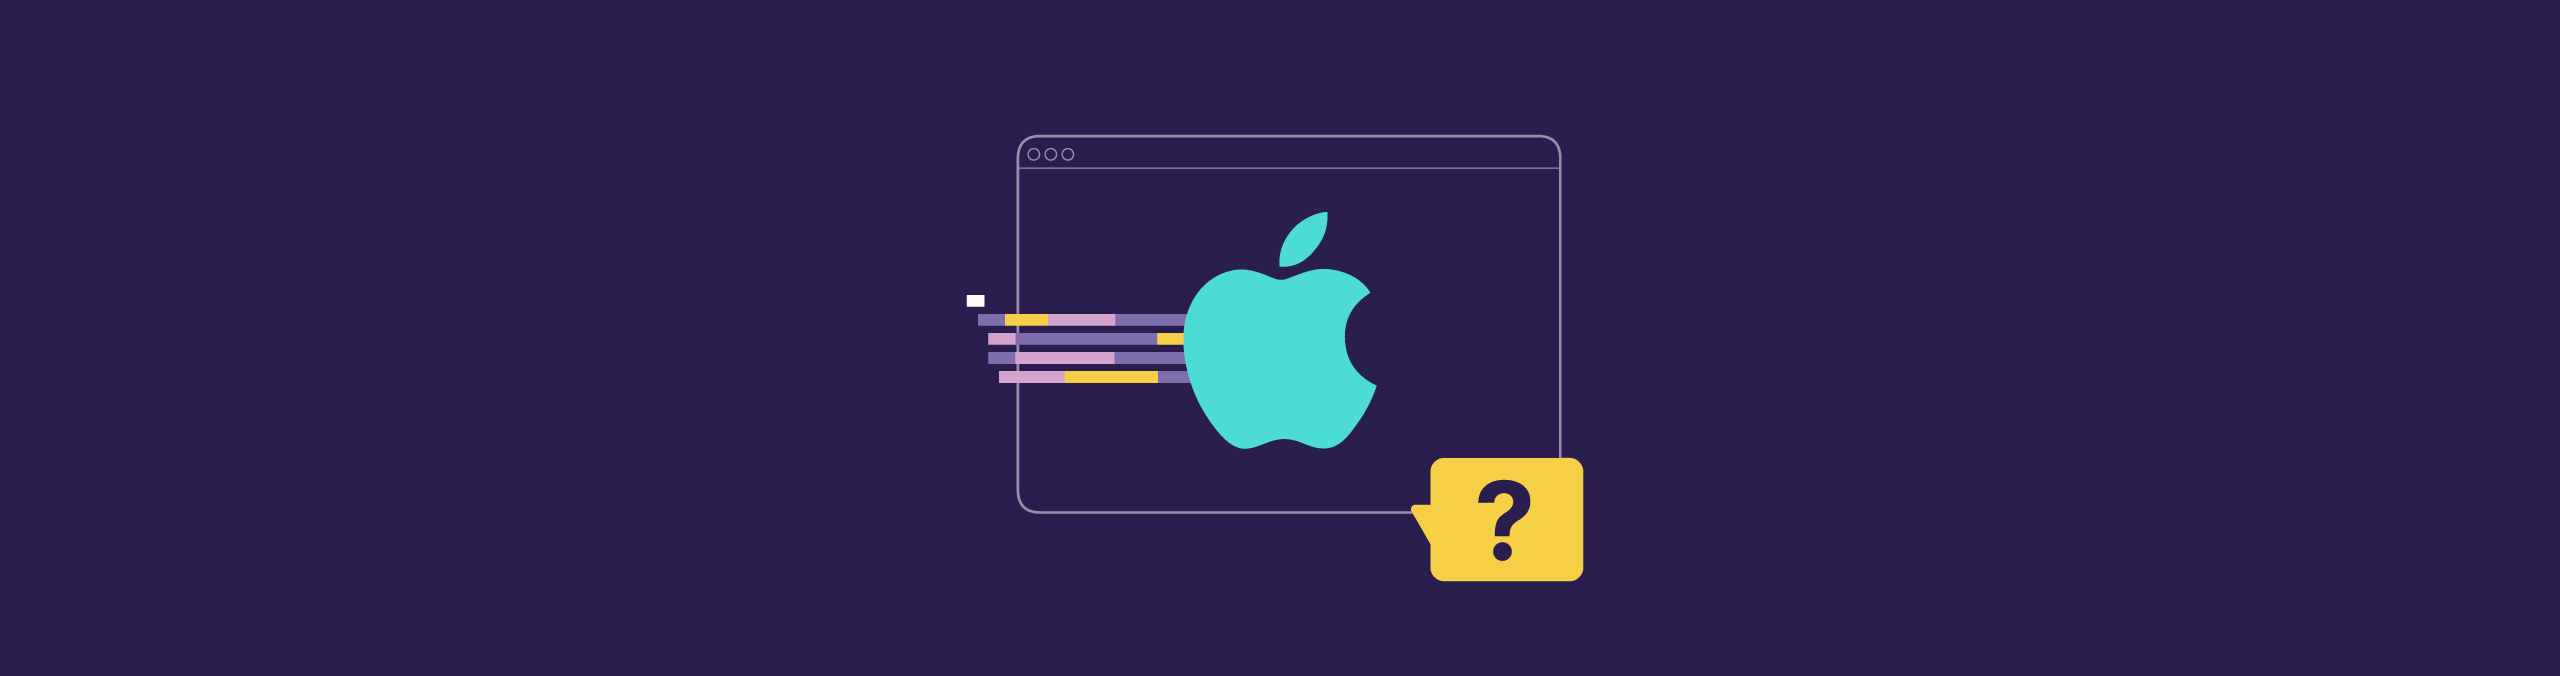 ¿Cuál es el lenguaje de programación de Apple?